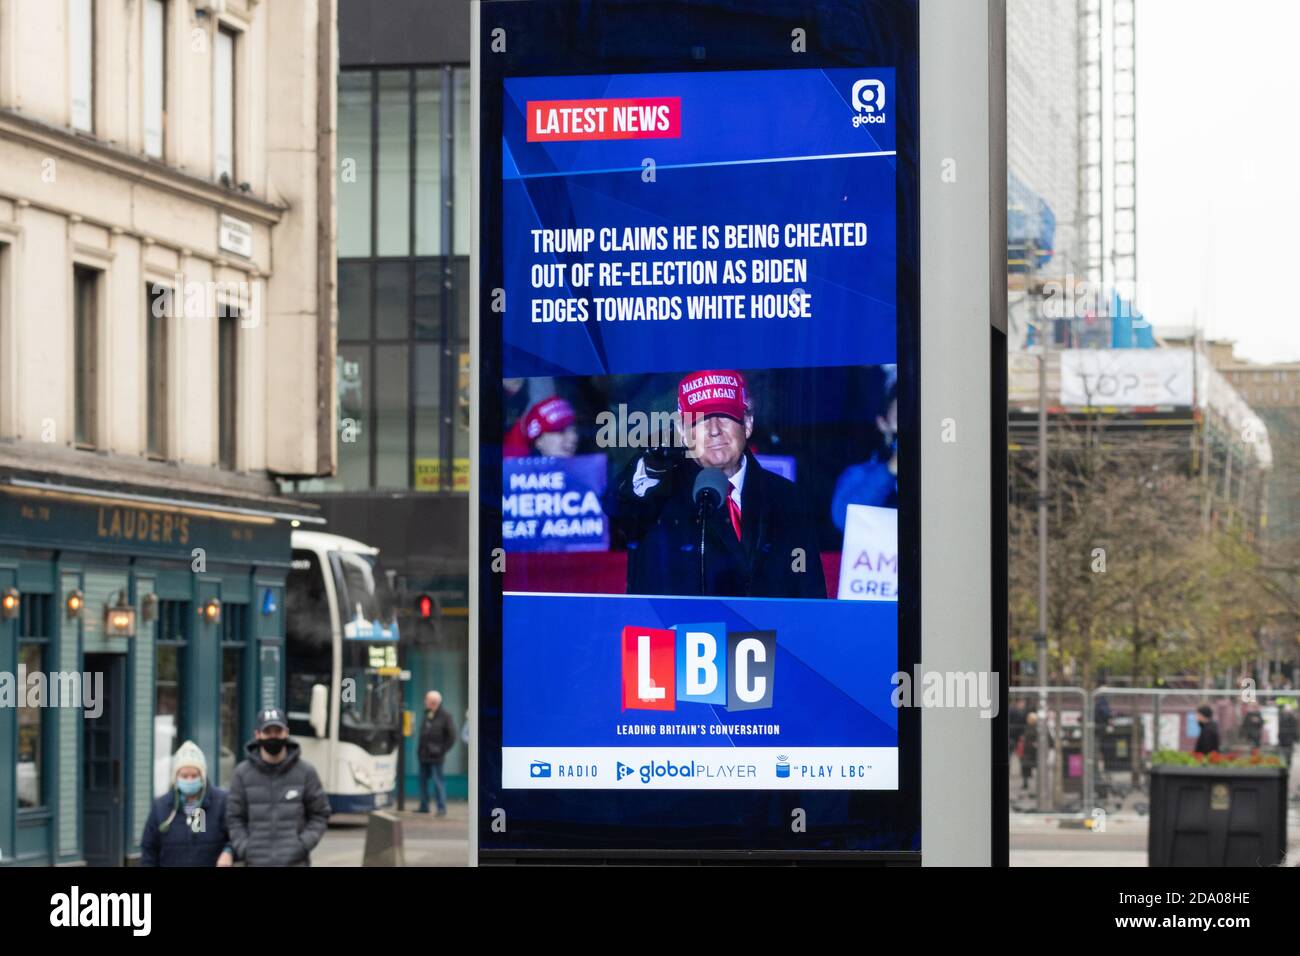 Il segno Streetlub DOOH (Digital out of home) fornito da Global e BT nel centro di Glasgow mostra le ultime notizie durante le elezioni negli Stati Uniti del 2020 da parte della radio LBC Foto Stock